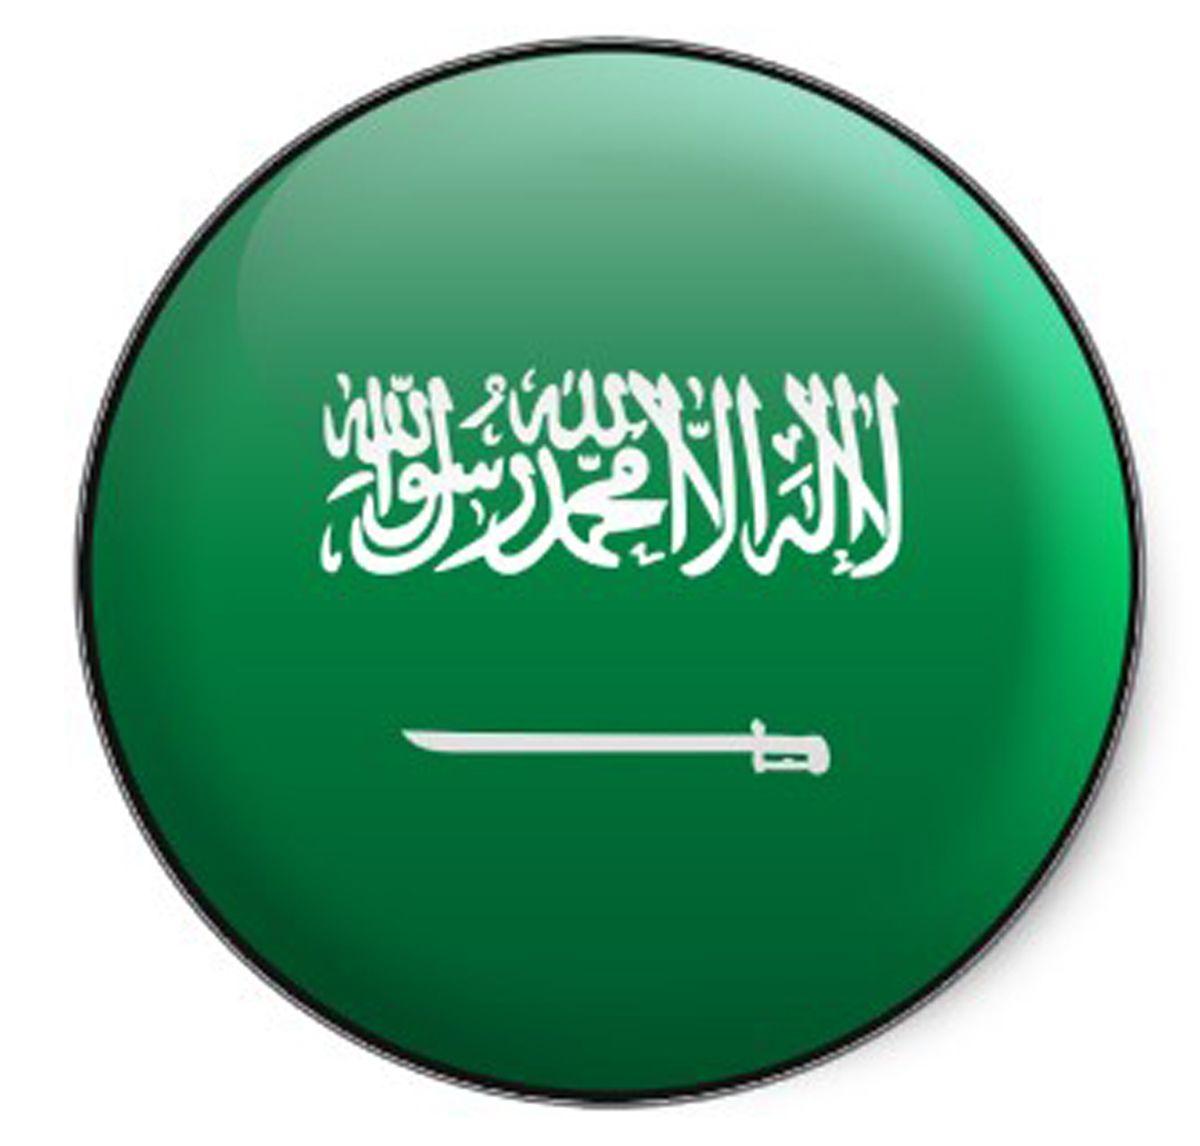 Design: Wallpaper Flag of Saudi Arabia